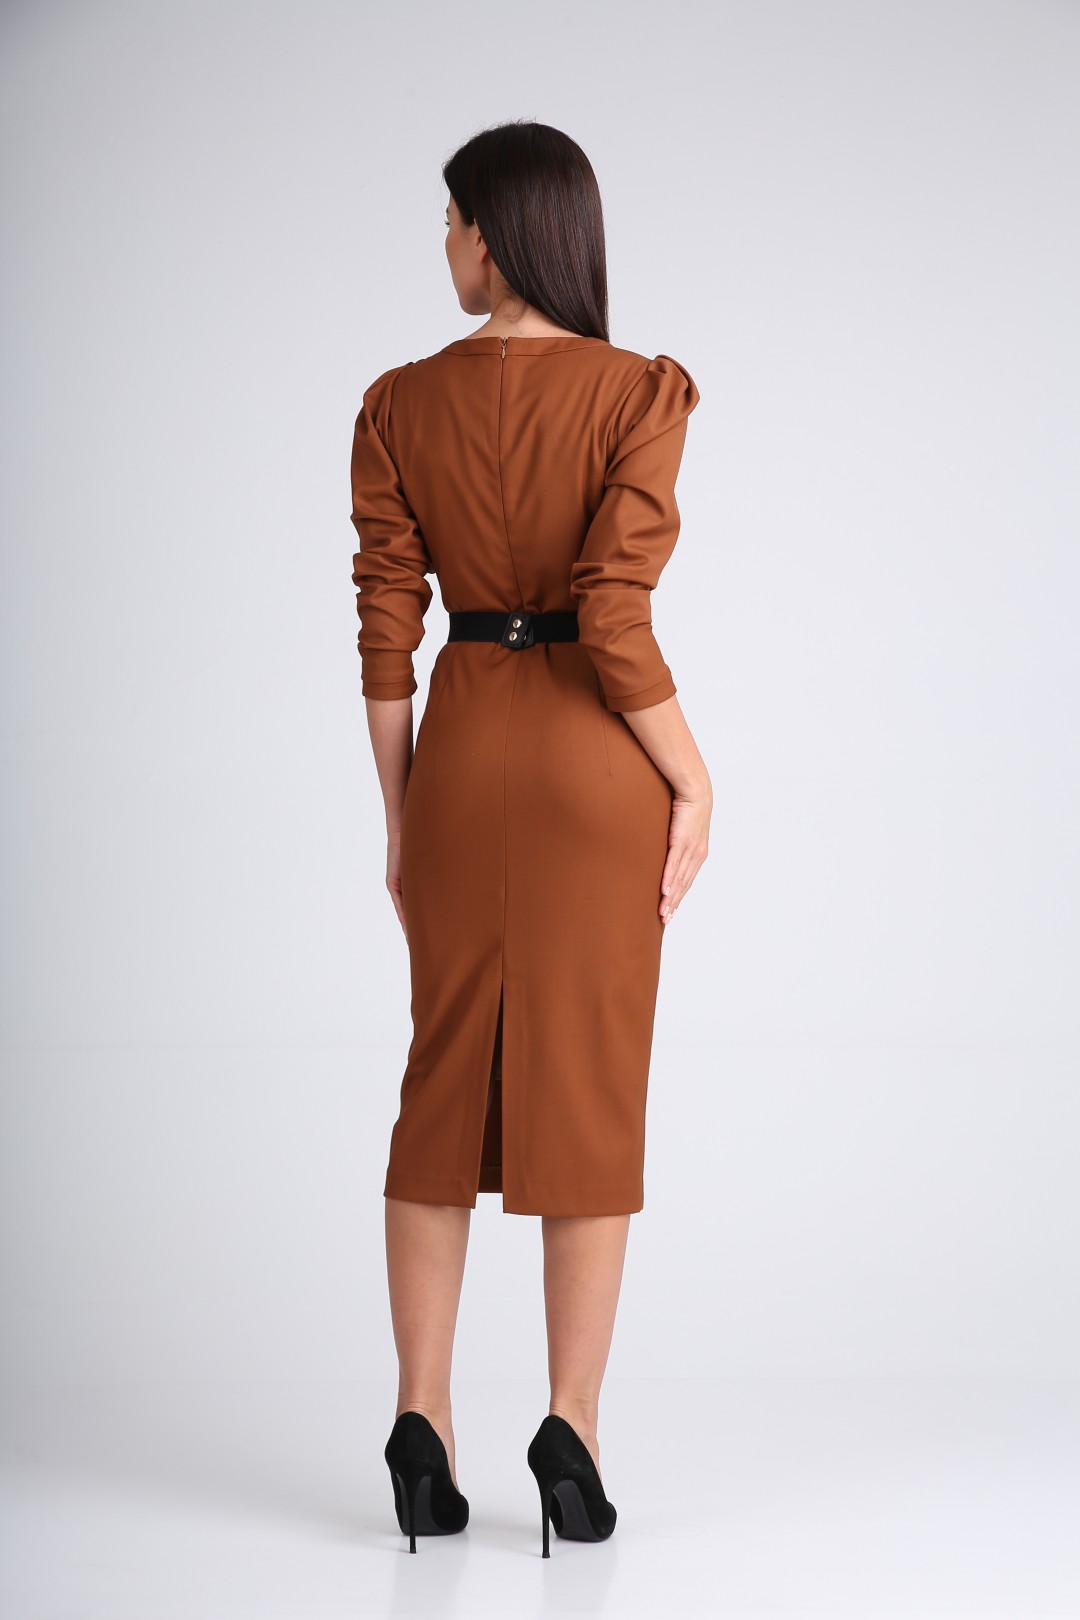 Платье SandyNa 130115 орехово-коричневый